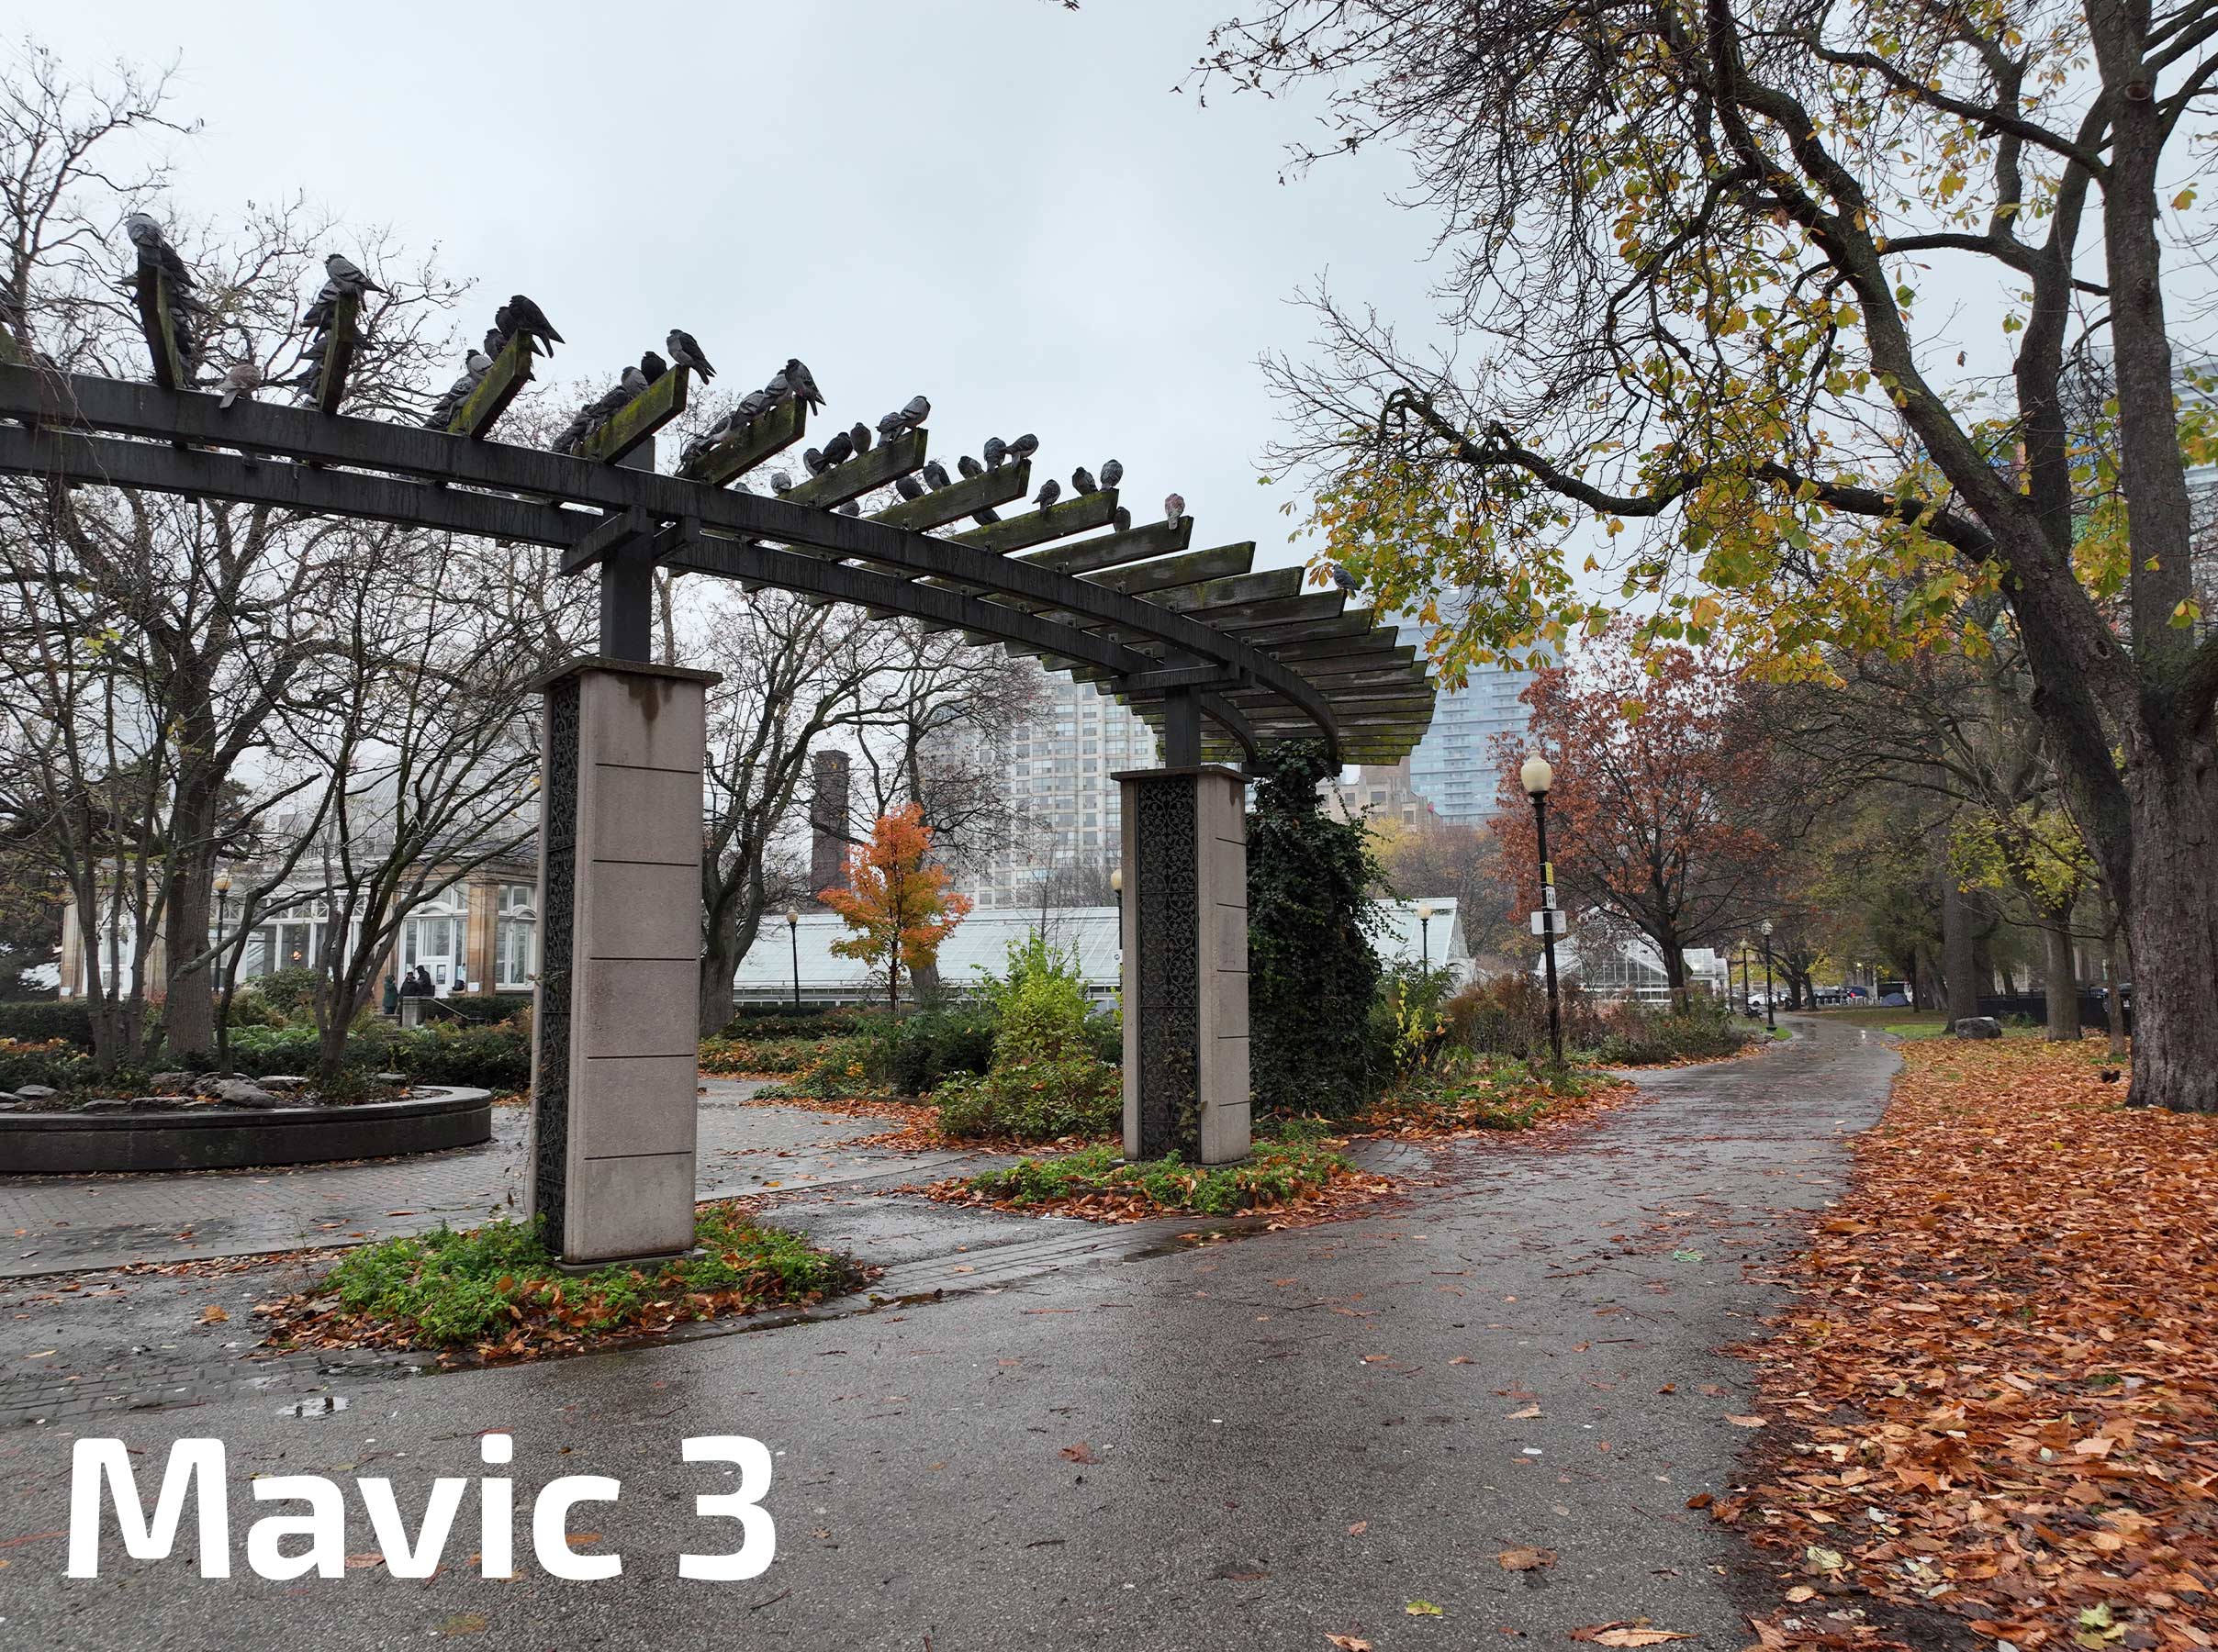 Mavic 3 Park 2